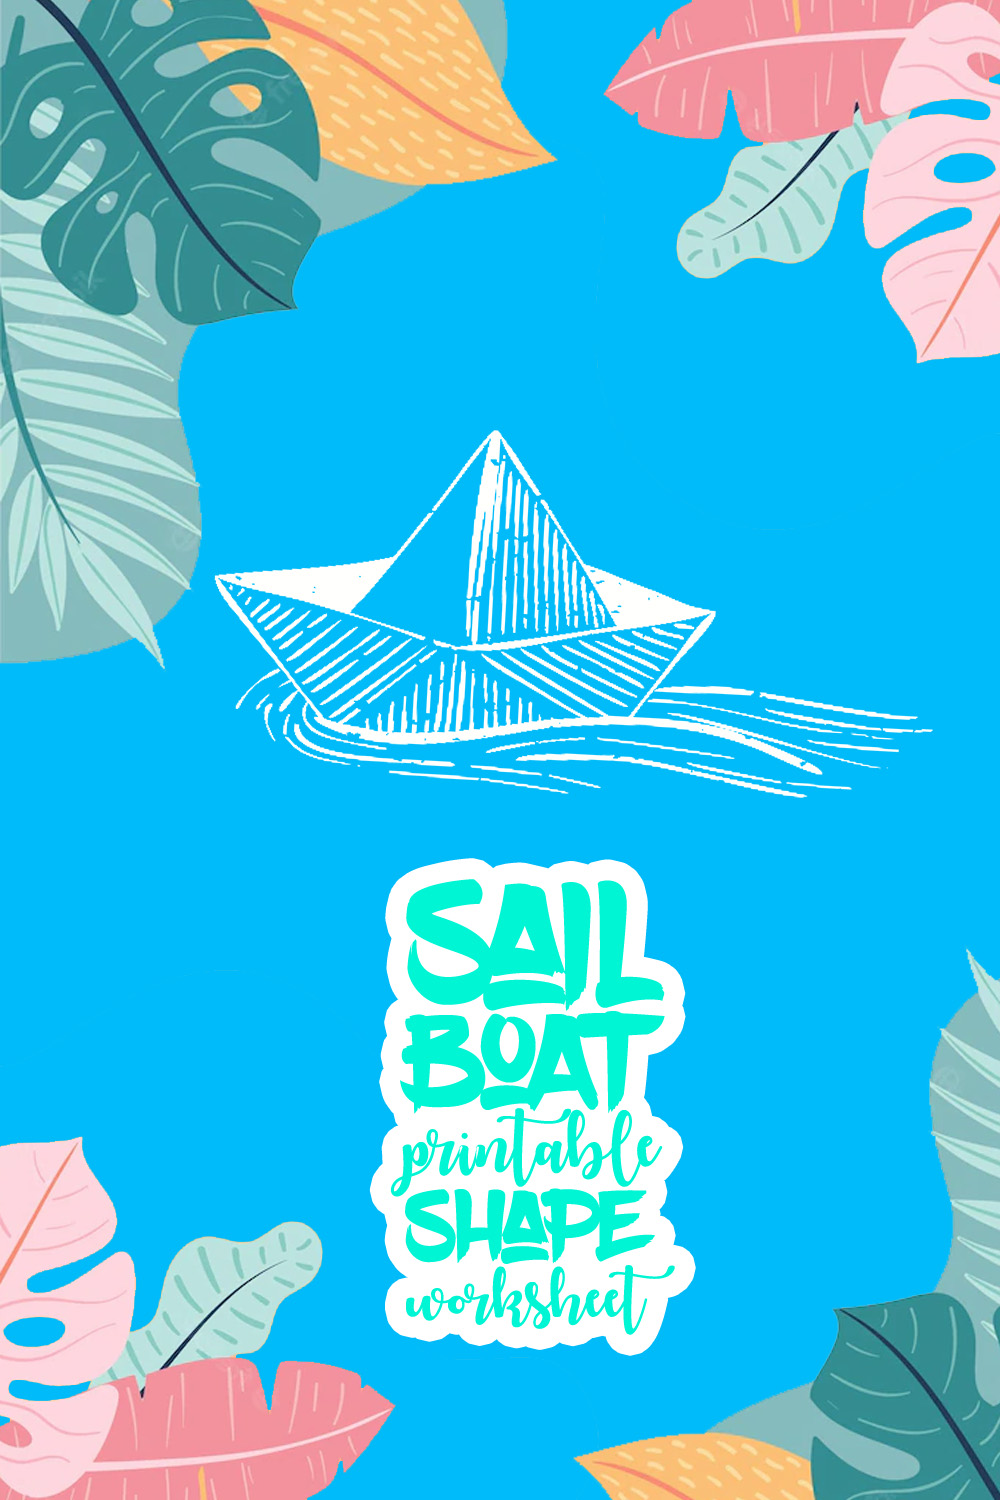 Sail Boat Printable Shapes Worksheets